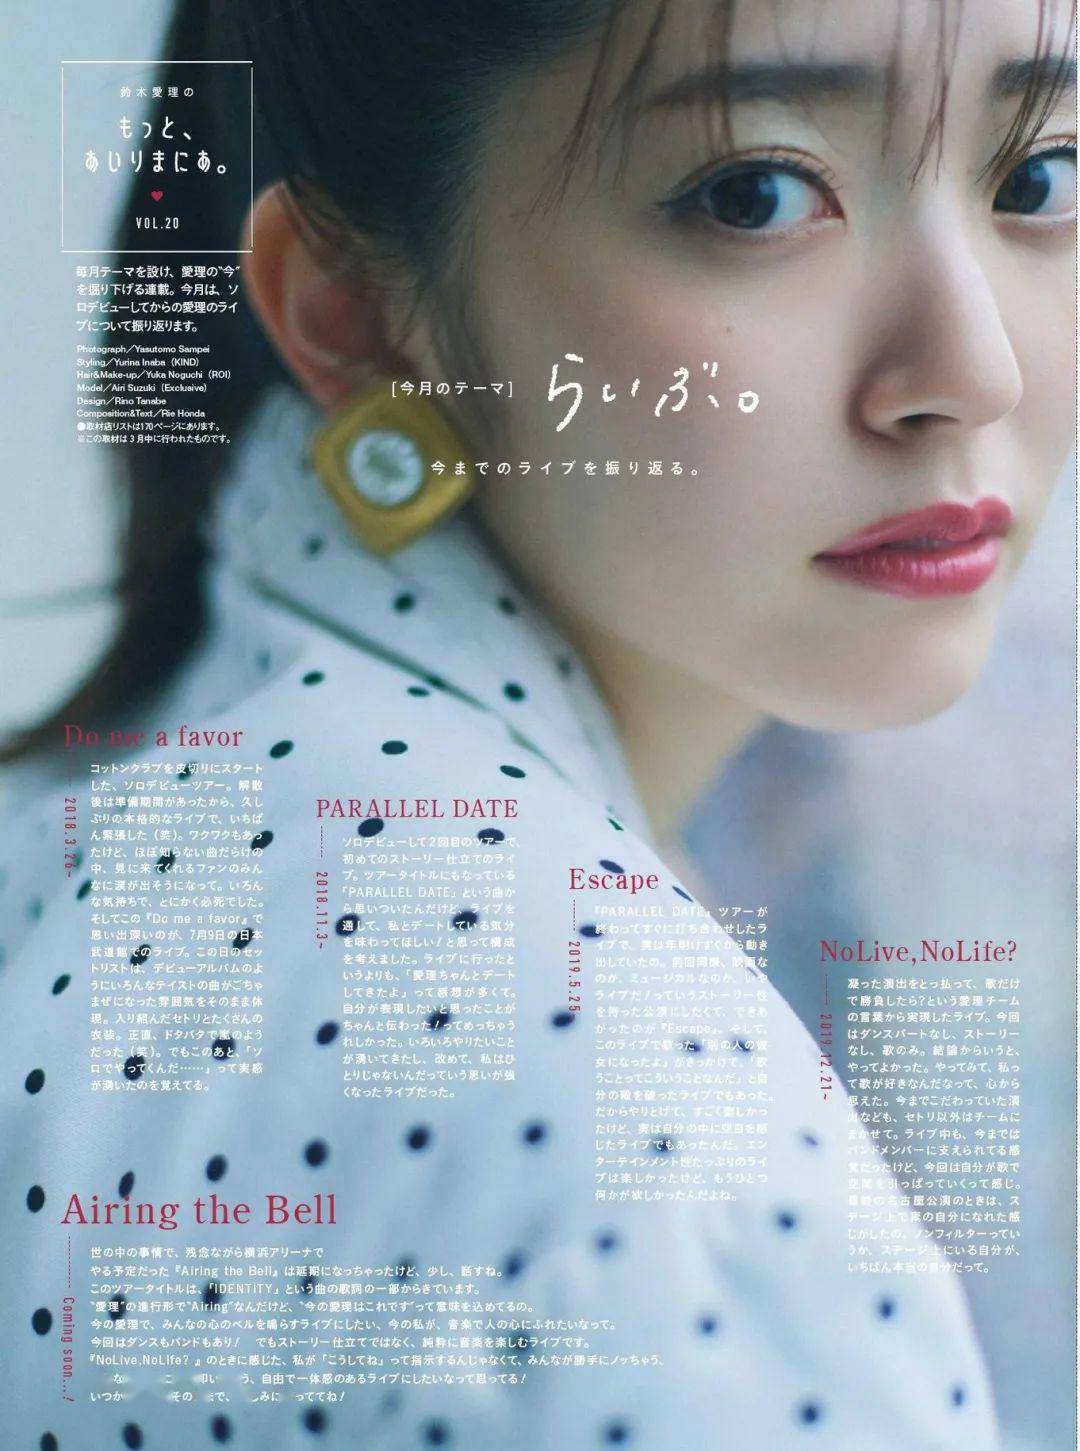 日本杂志最in发型合集,总有一款让你心动!